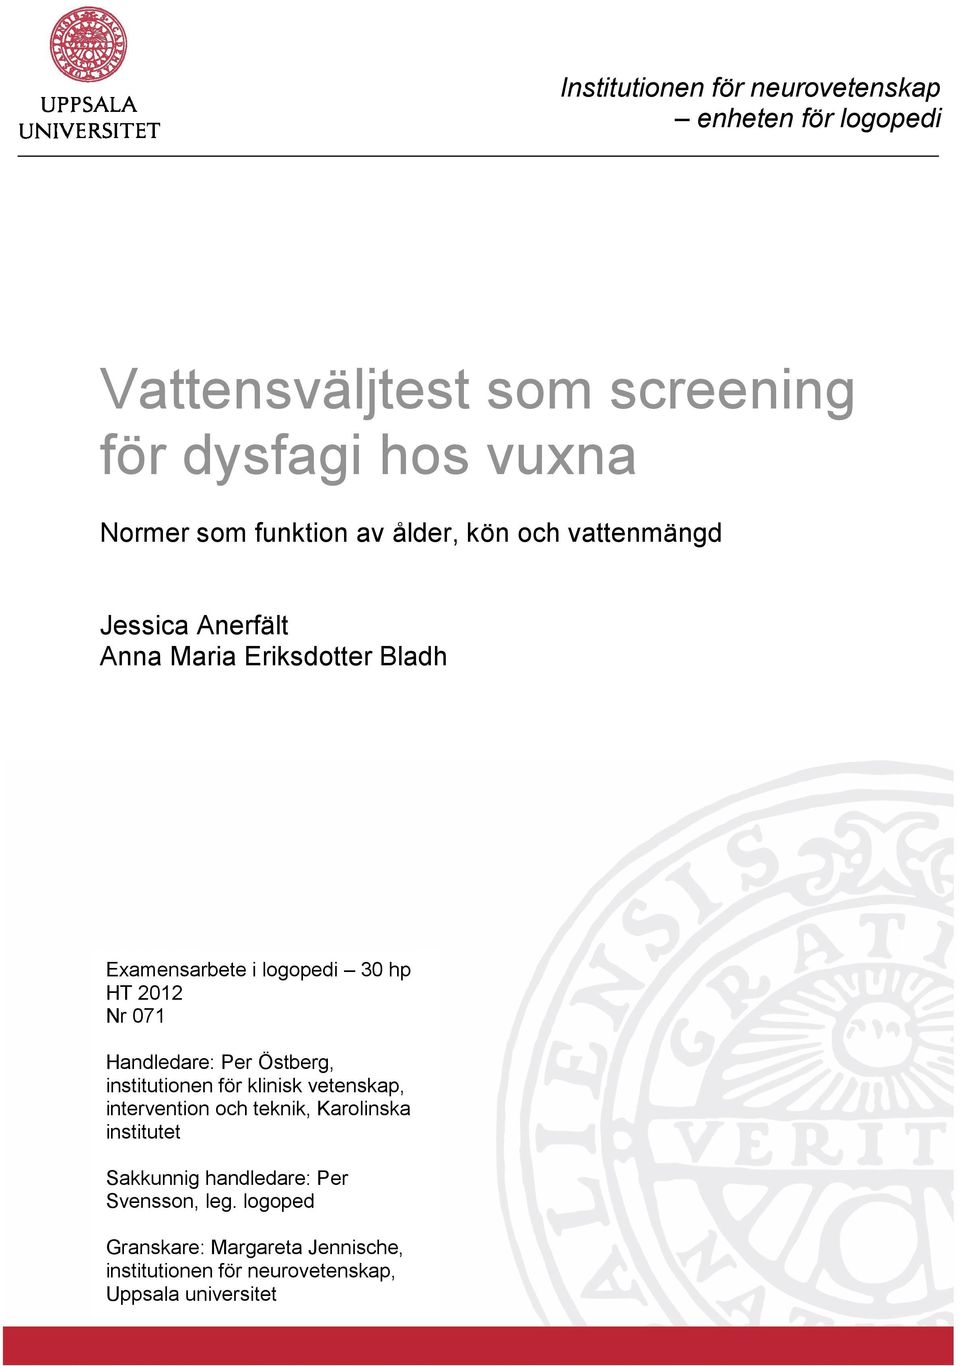 2012 Nr 071 Handledare: Per Östberg, institutionen för klinisk vetenskap, intervention och teknik, Karolinska institutet